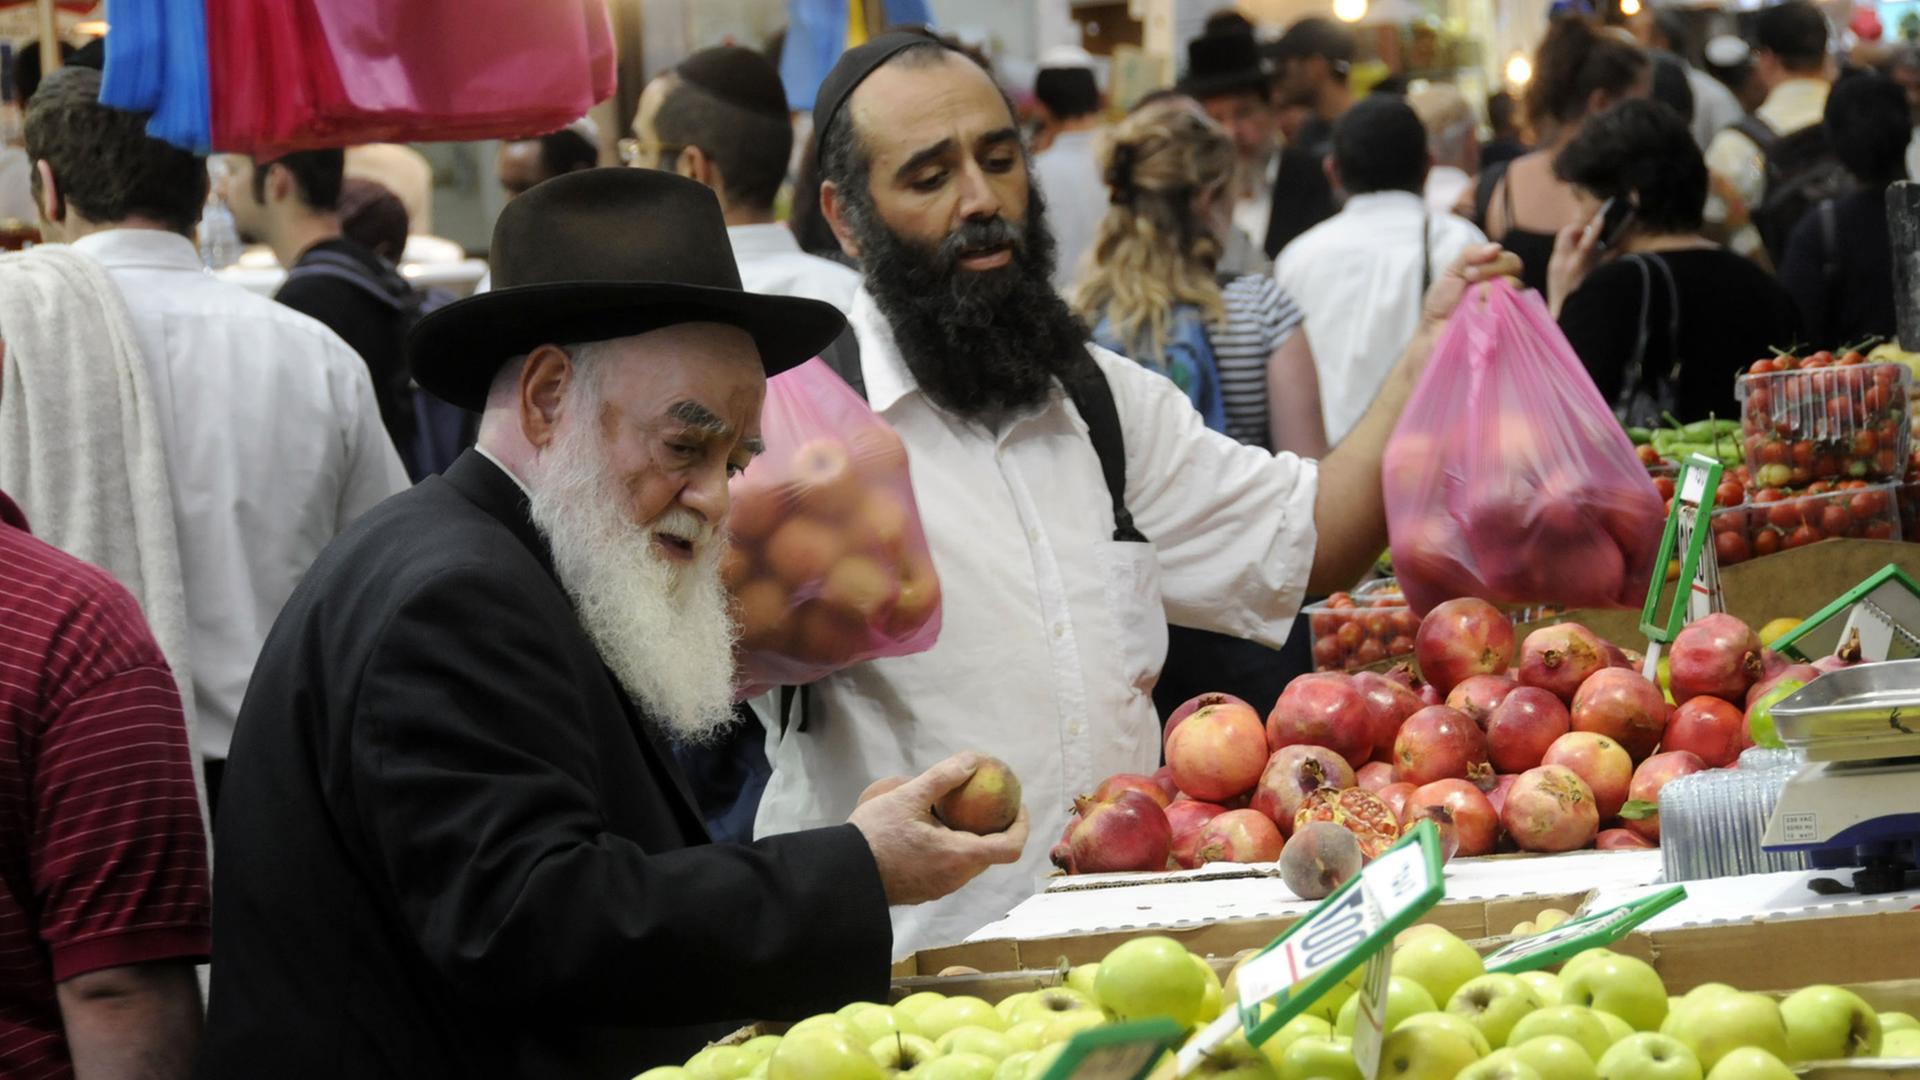 Israelis kaufen Obst auf einem Markt.